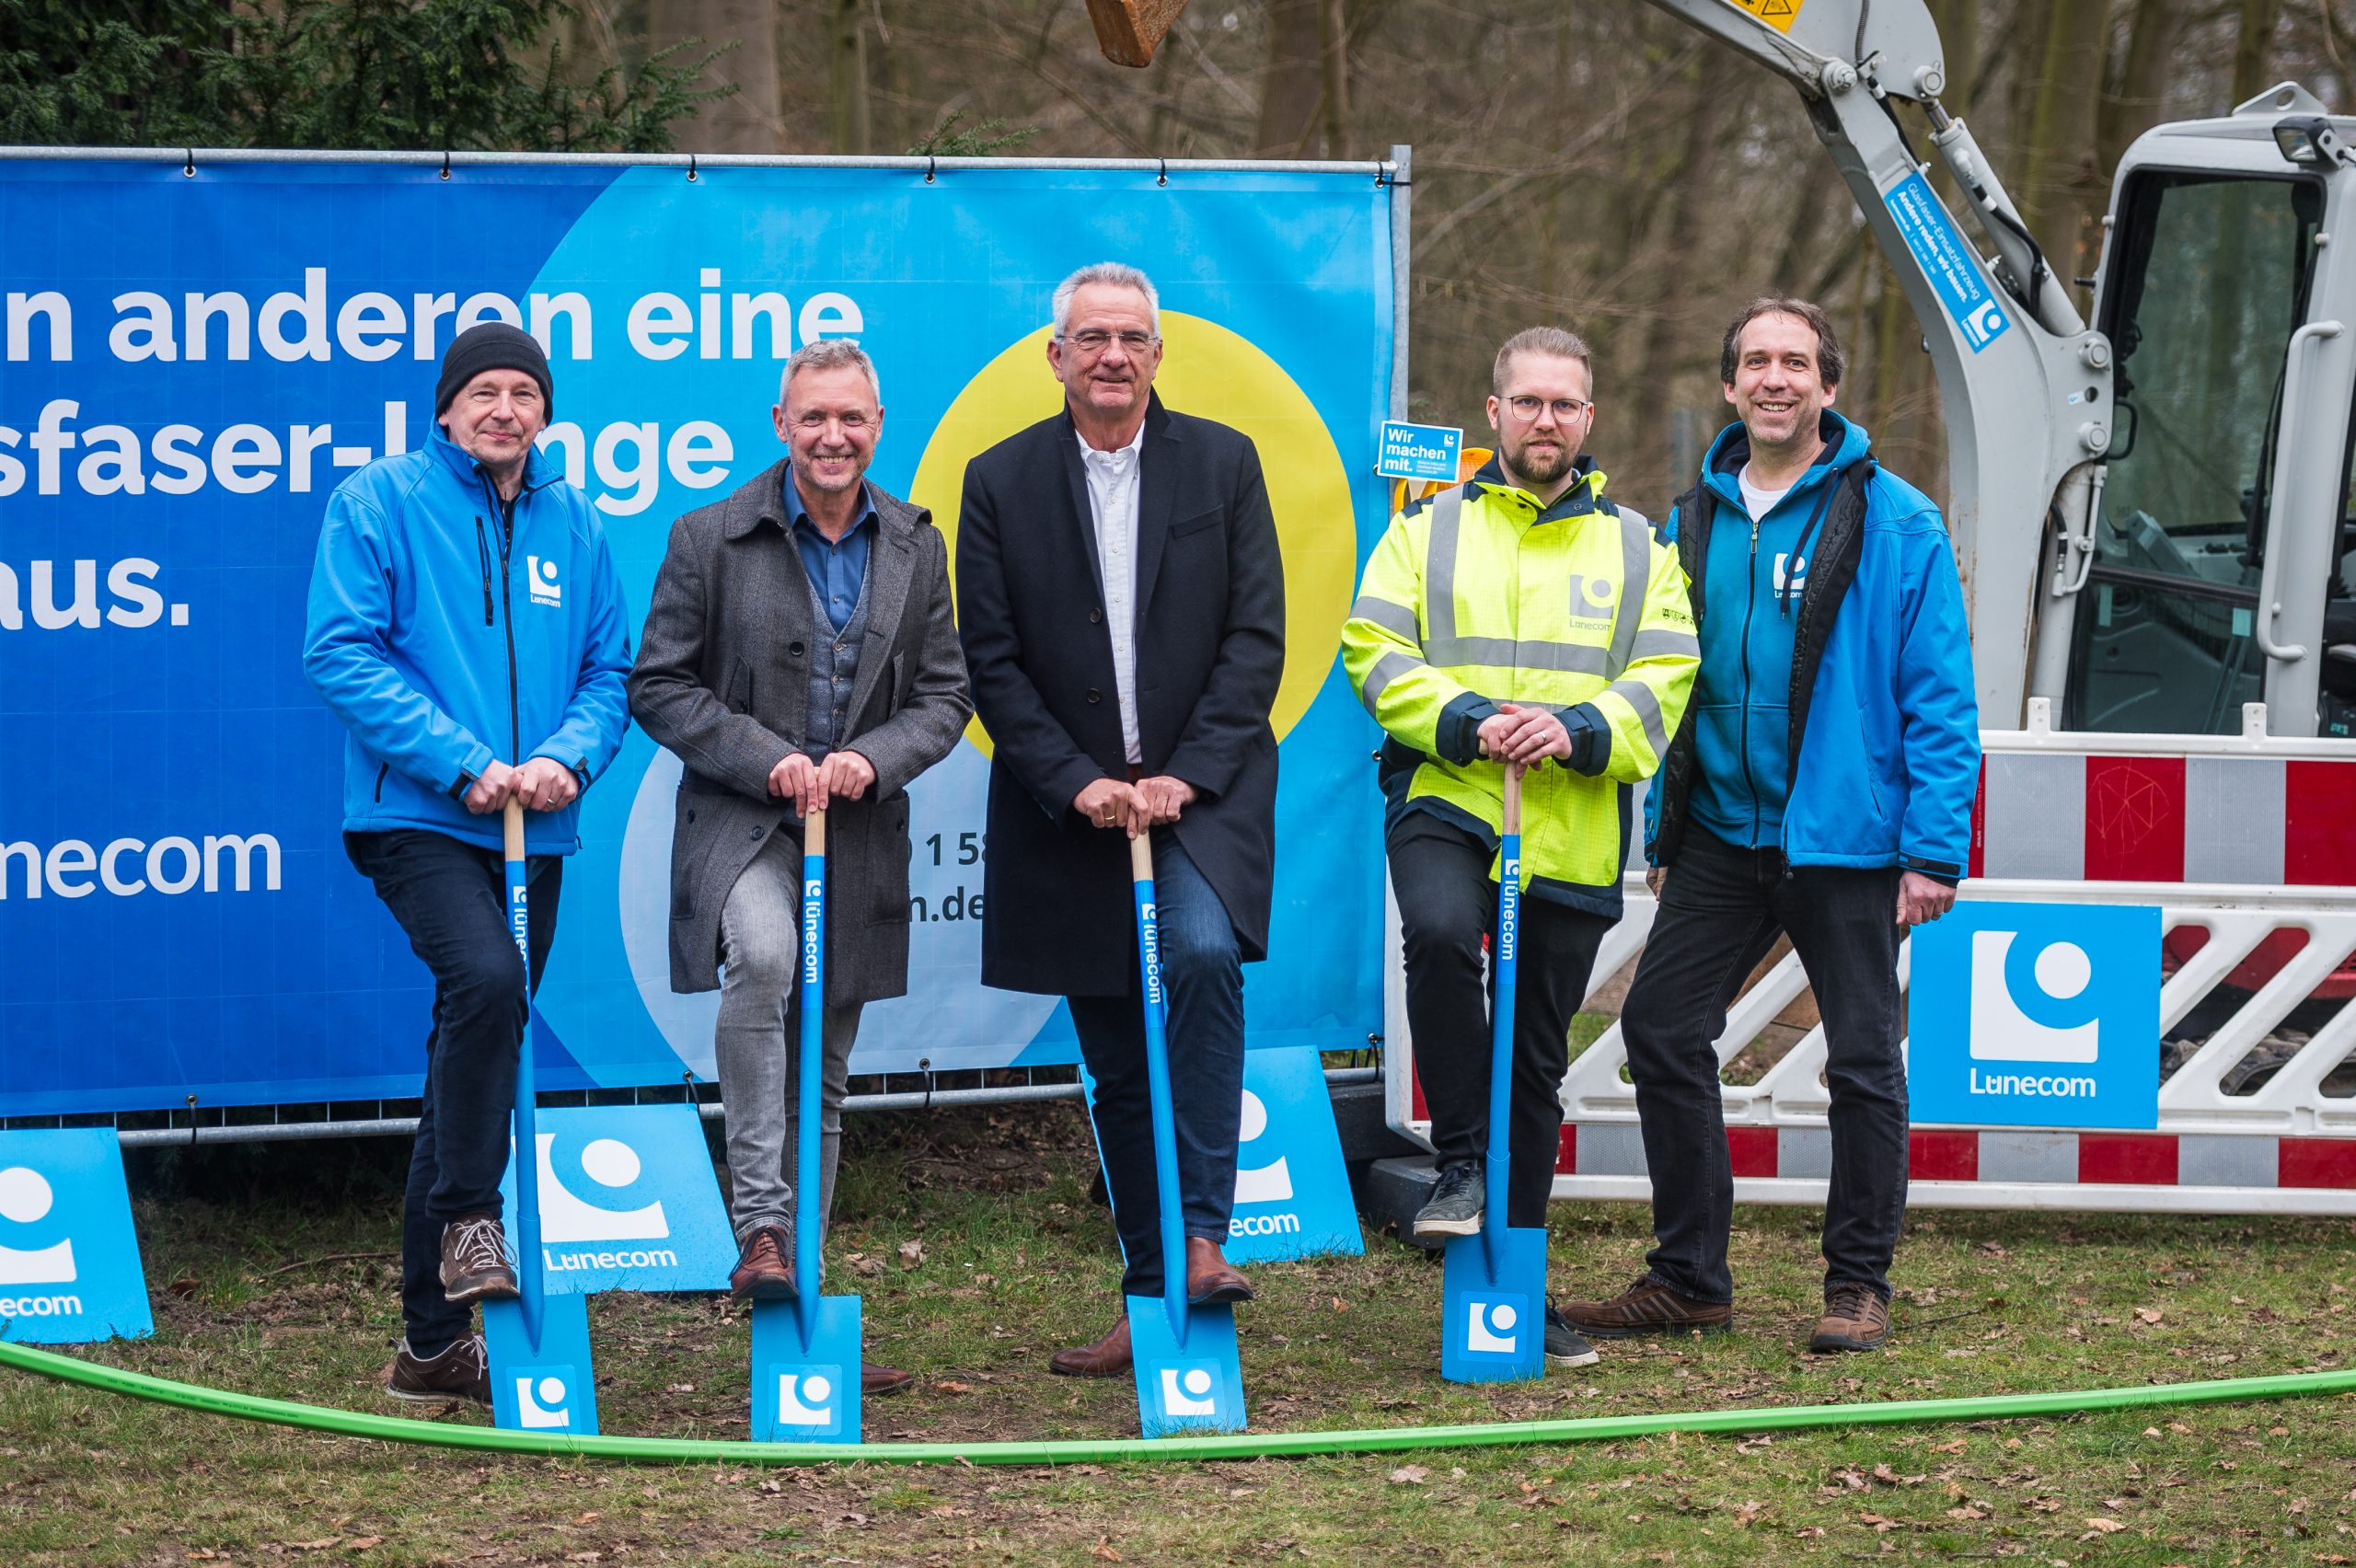 Spatenstich in Uelzen. Vertreter der Lünecom sowie Uelzens Bürgermeister setzen den Spatenstich für den Glasfaser-Ausbau der Lünecom.